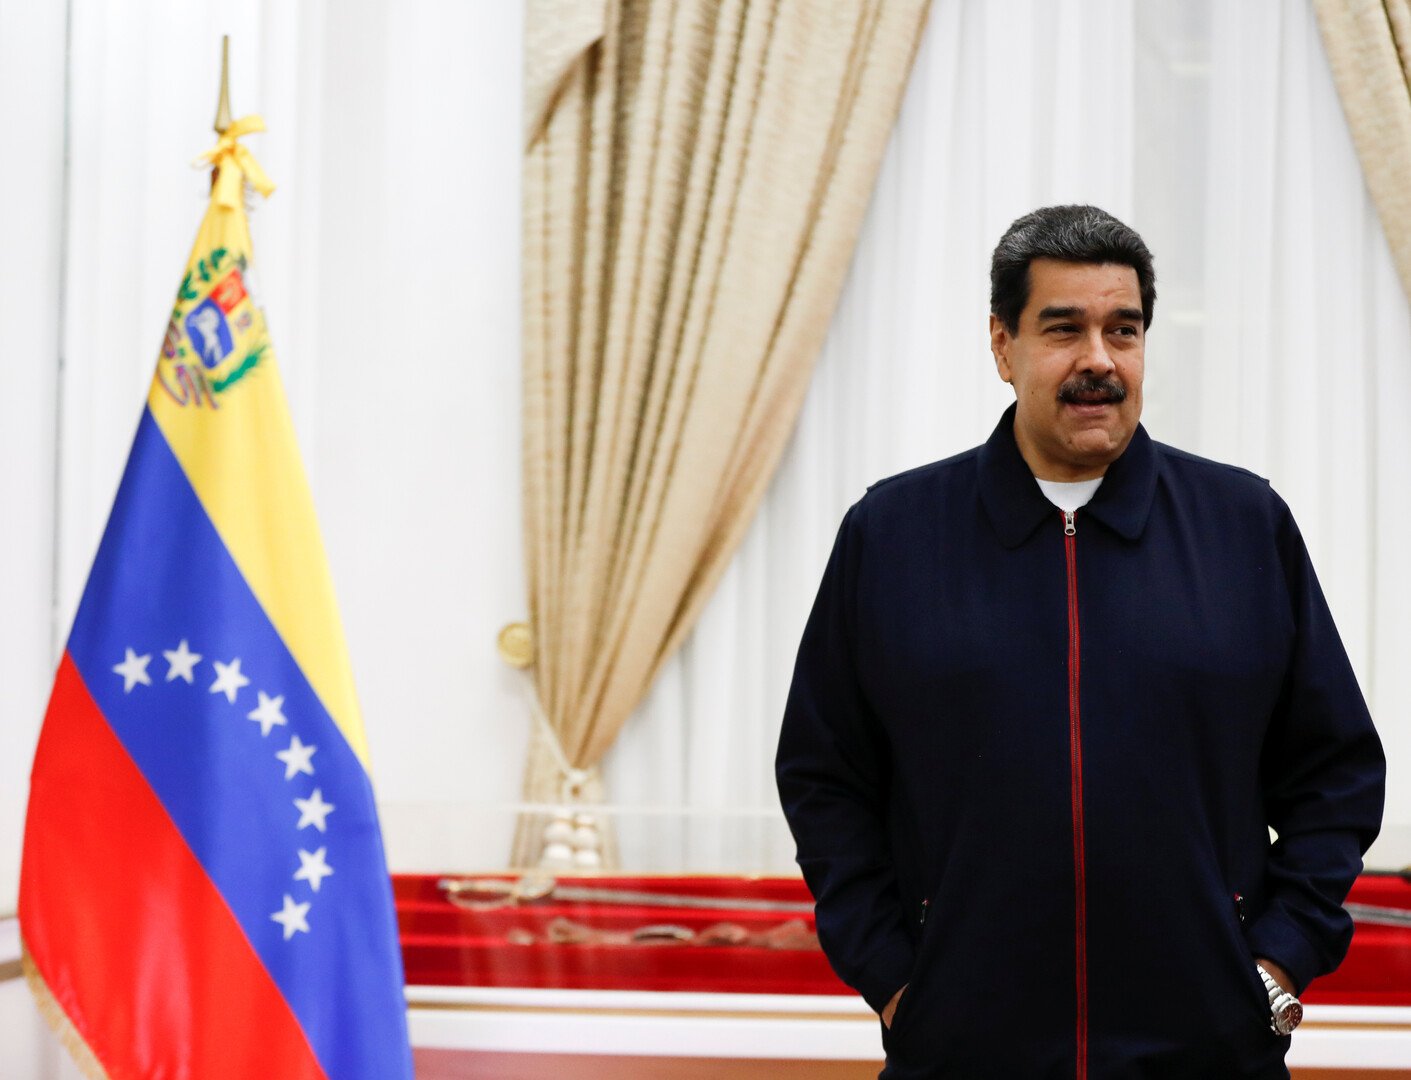 بوتين لمادورو: ندعم كل مؤسسات السلطة الشرعية في فنزويلا وملتزمون بتعاوننا العسكري